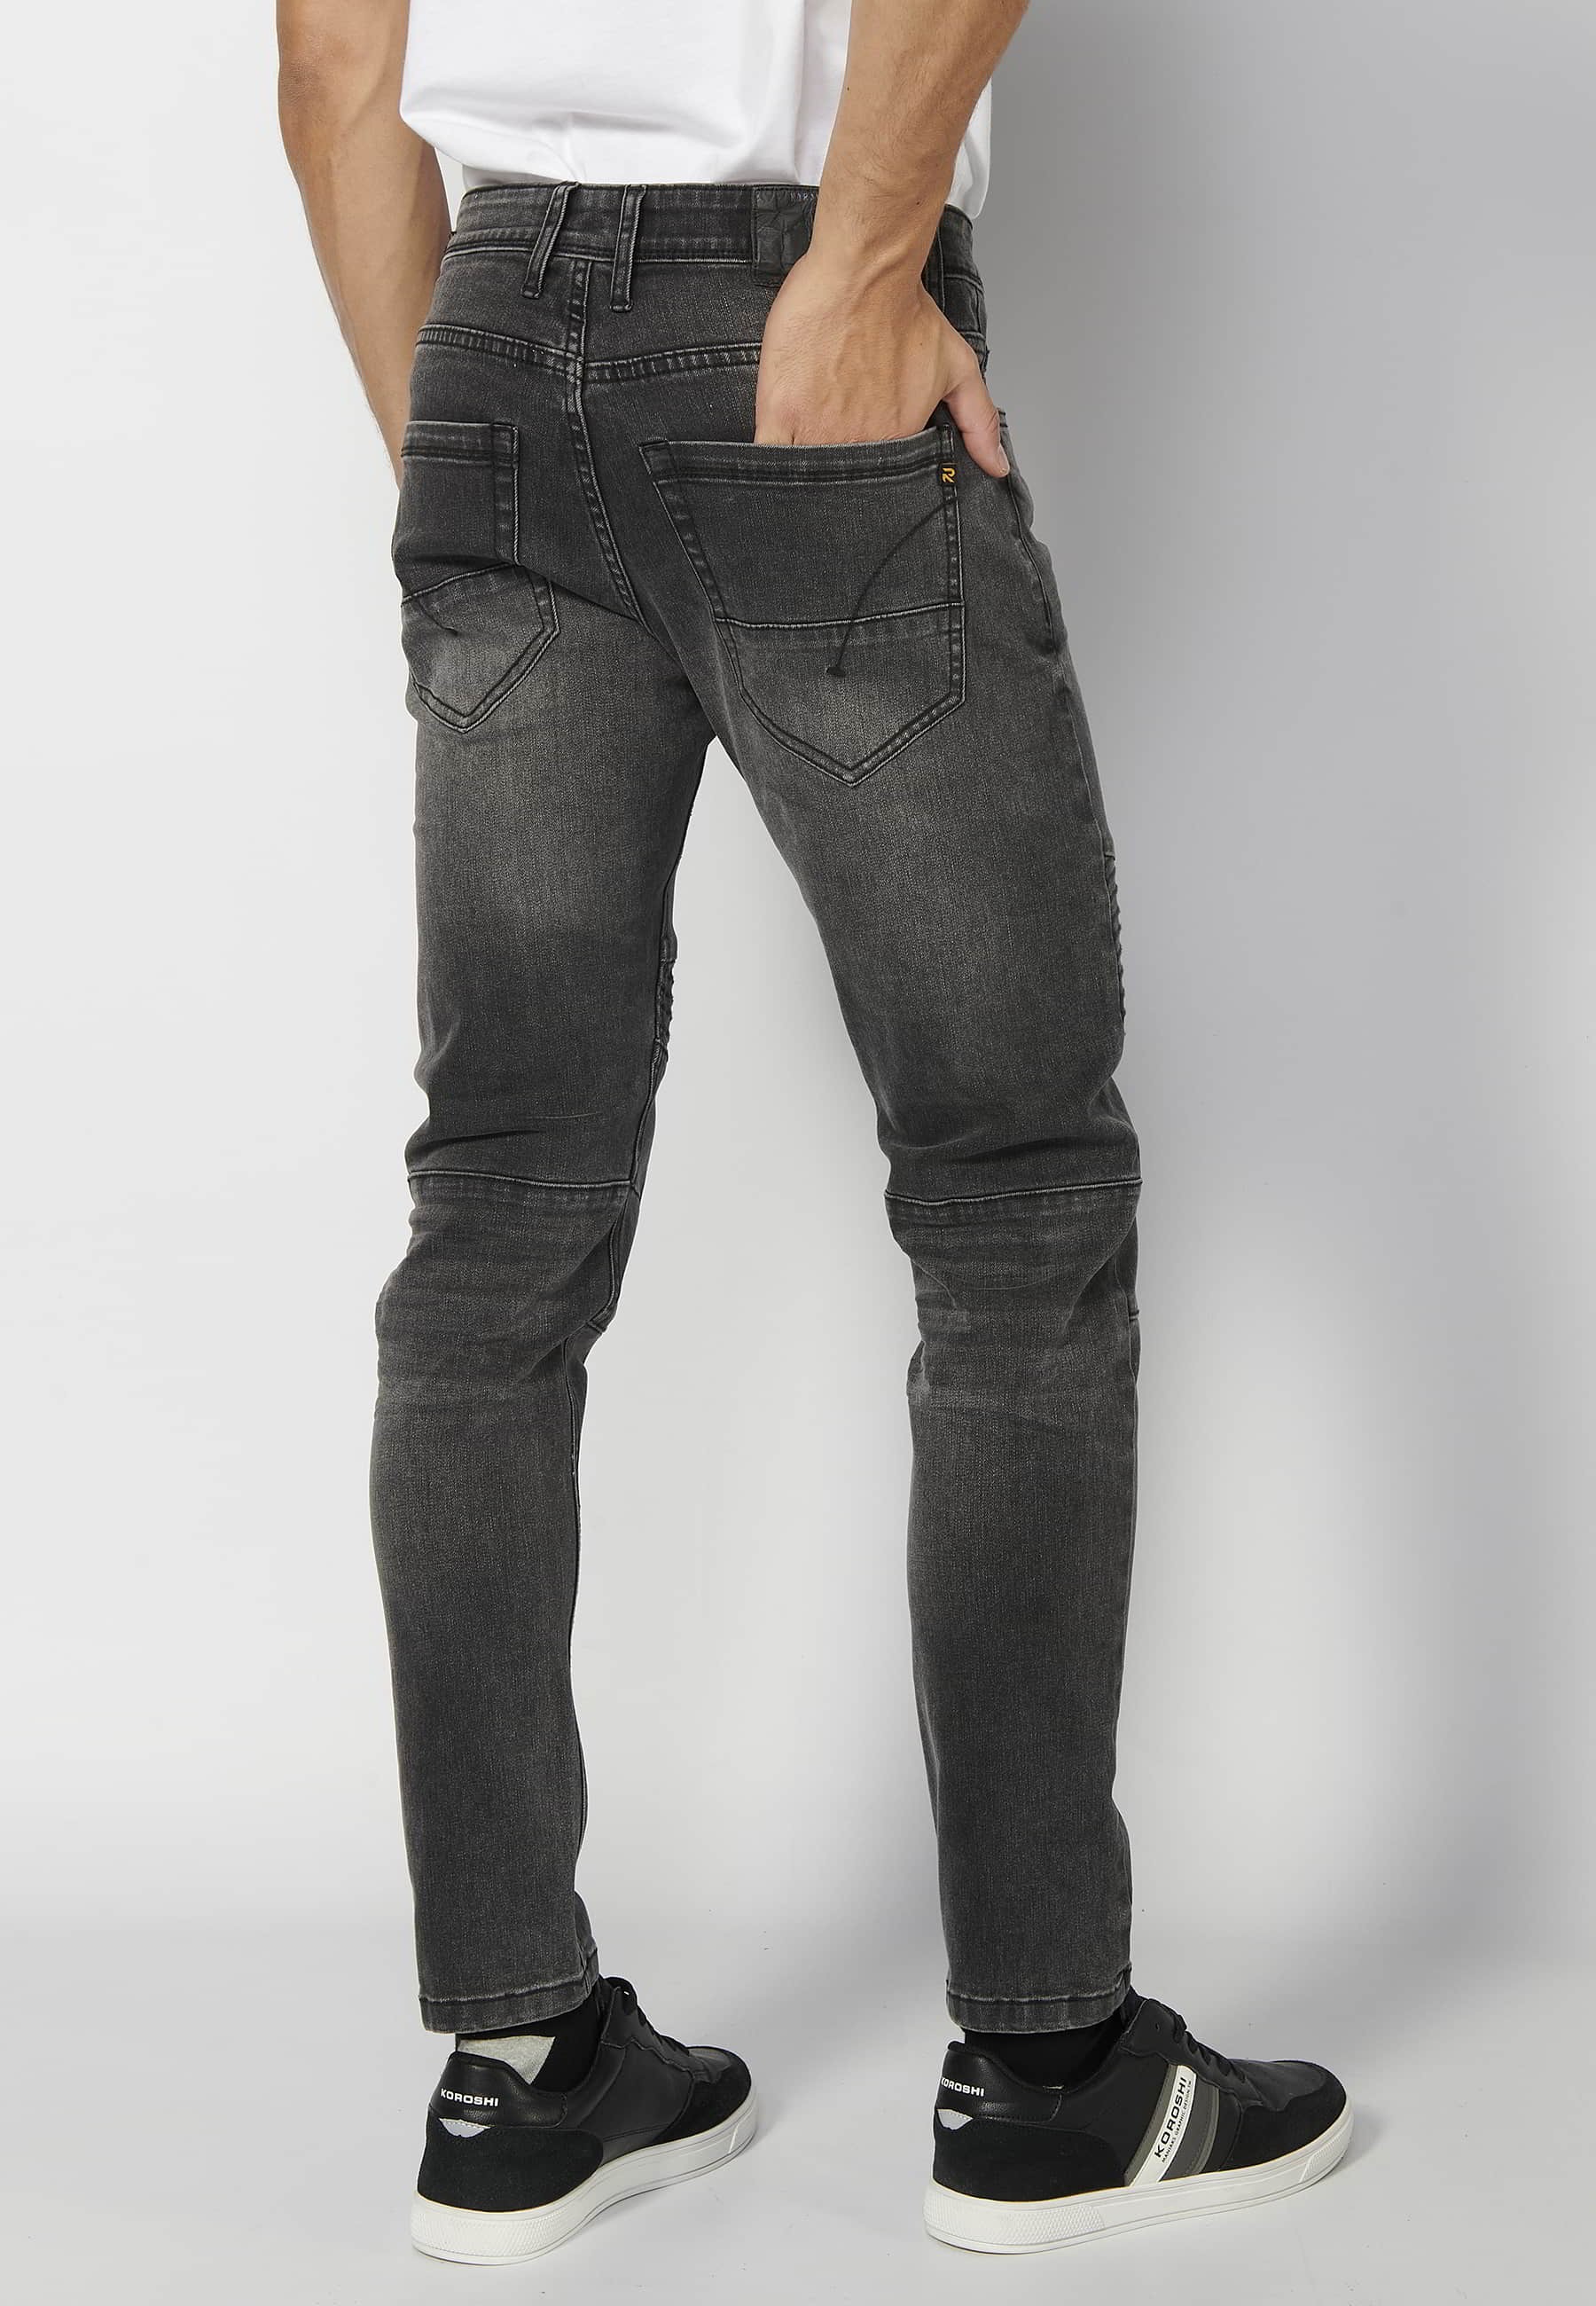 Pantalón largo skinny fit, con cinco bolsillos, color negro desgastado para Hombre 2